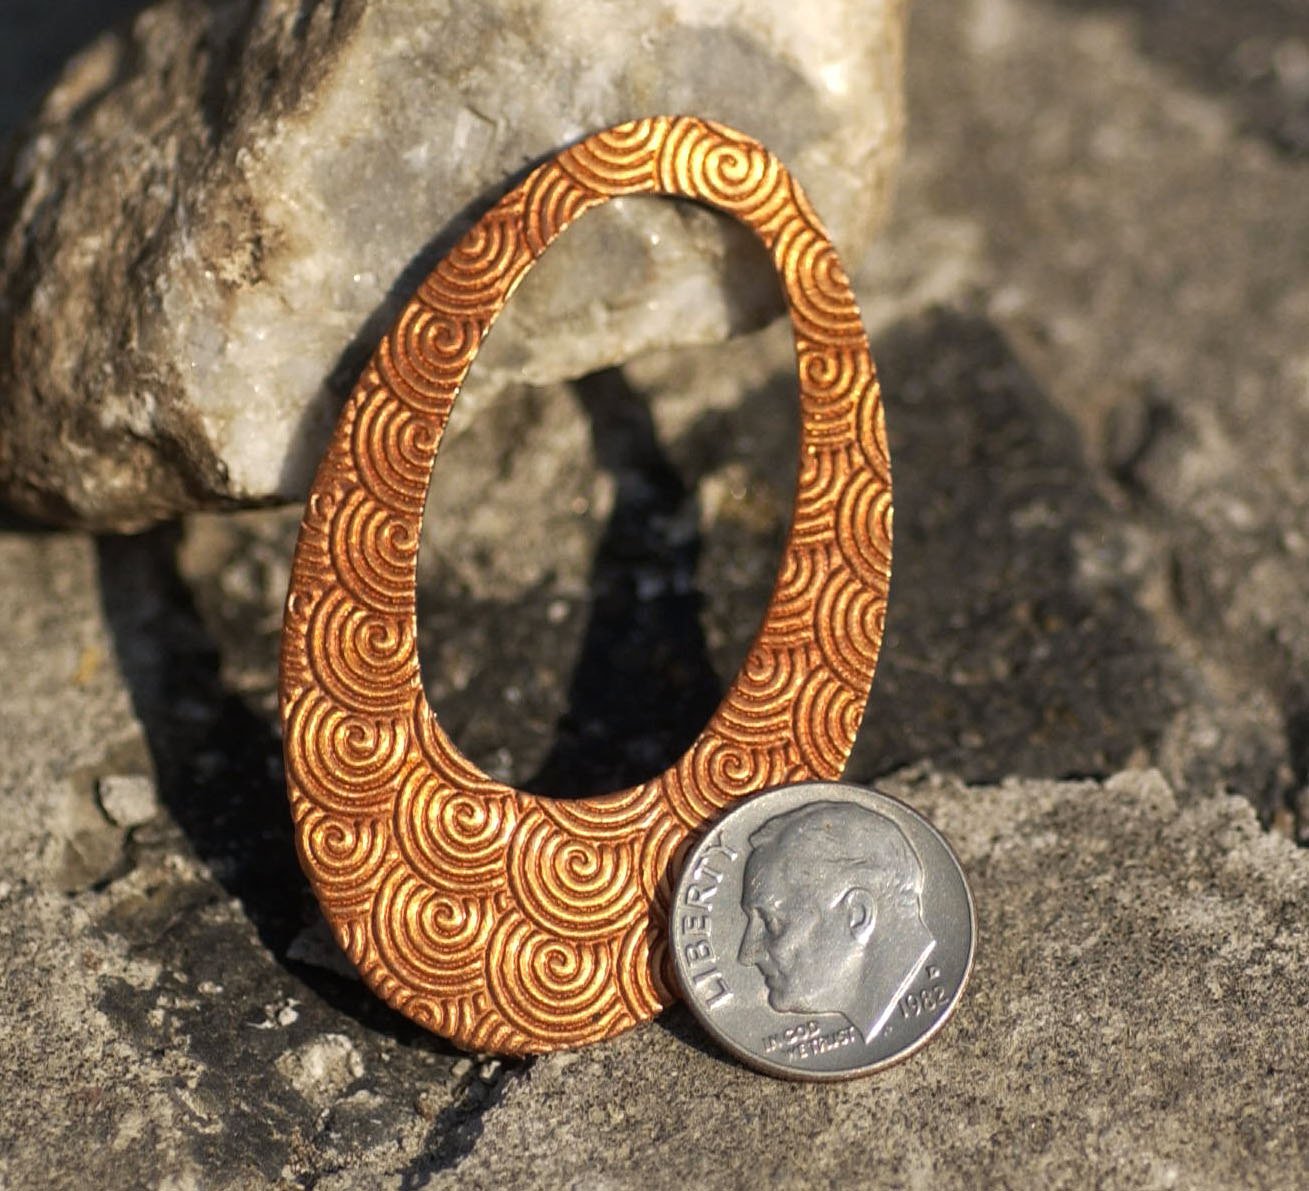 Copper Teardrop 56mm x 34mm Spiral Pattern Blanks Shape Cutout Blank for Enameling Metalworking Jewelry Making